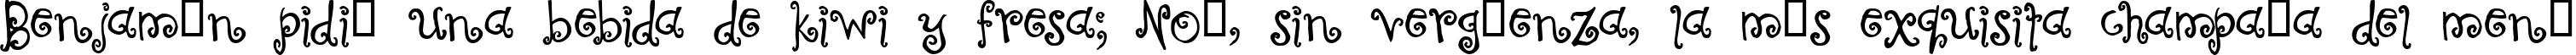 Пример написания шрифтом Curly Coryphaeus текста на испанском